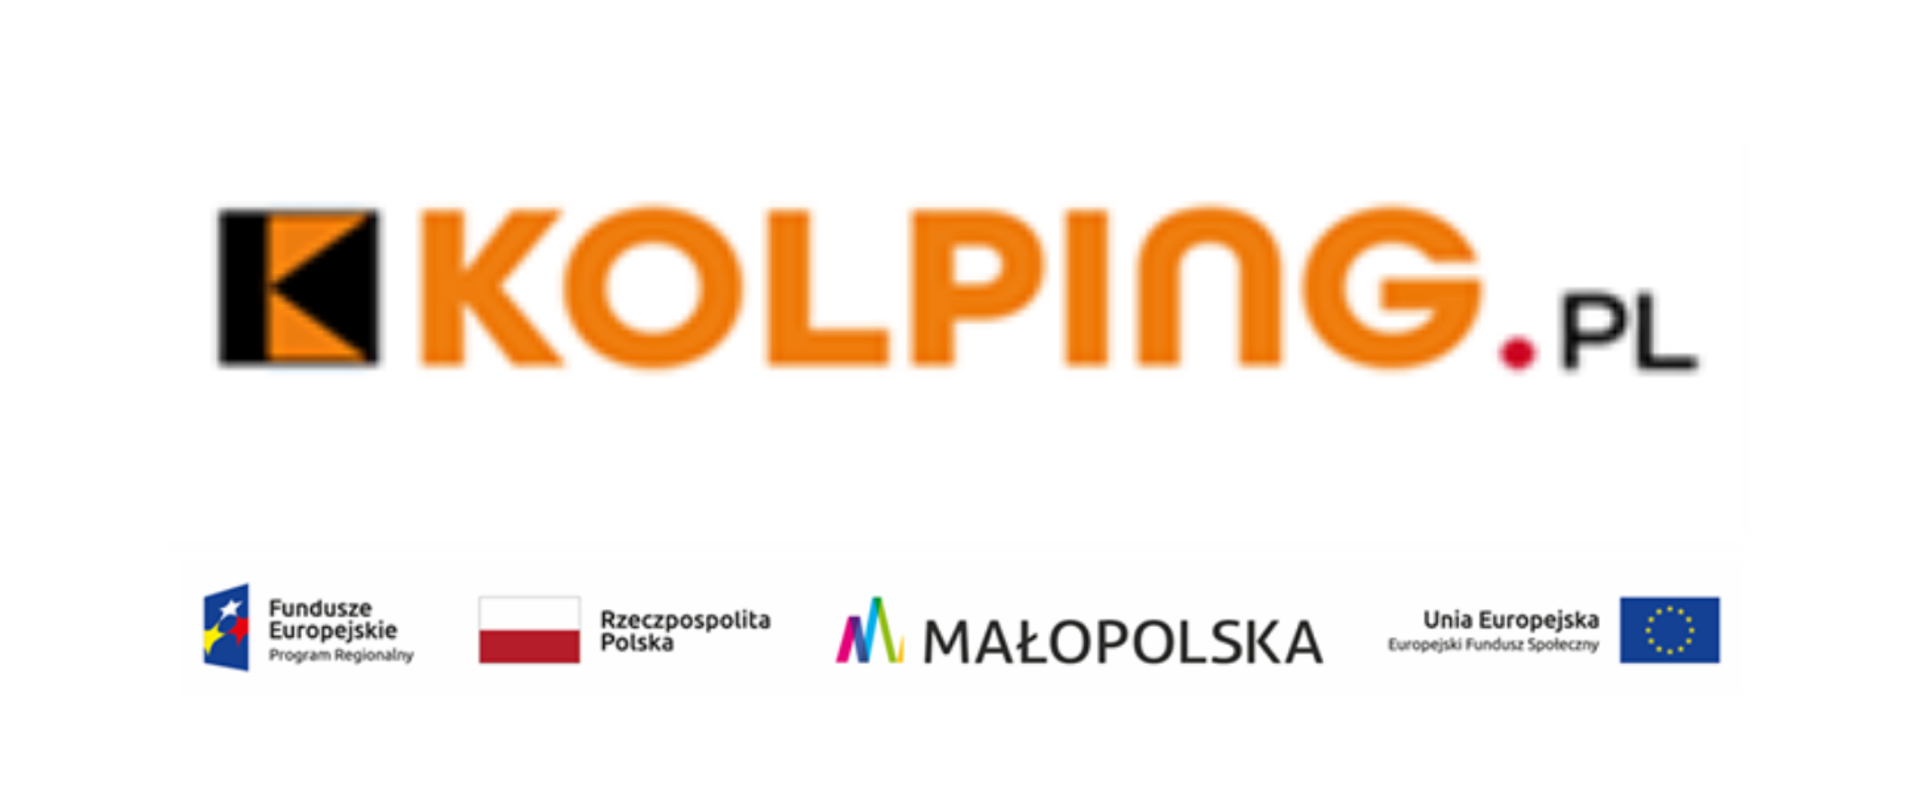 Kolping.pl